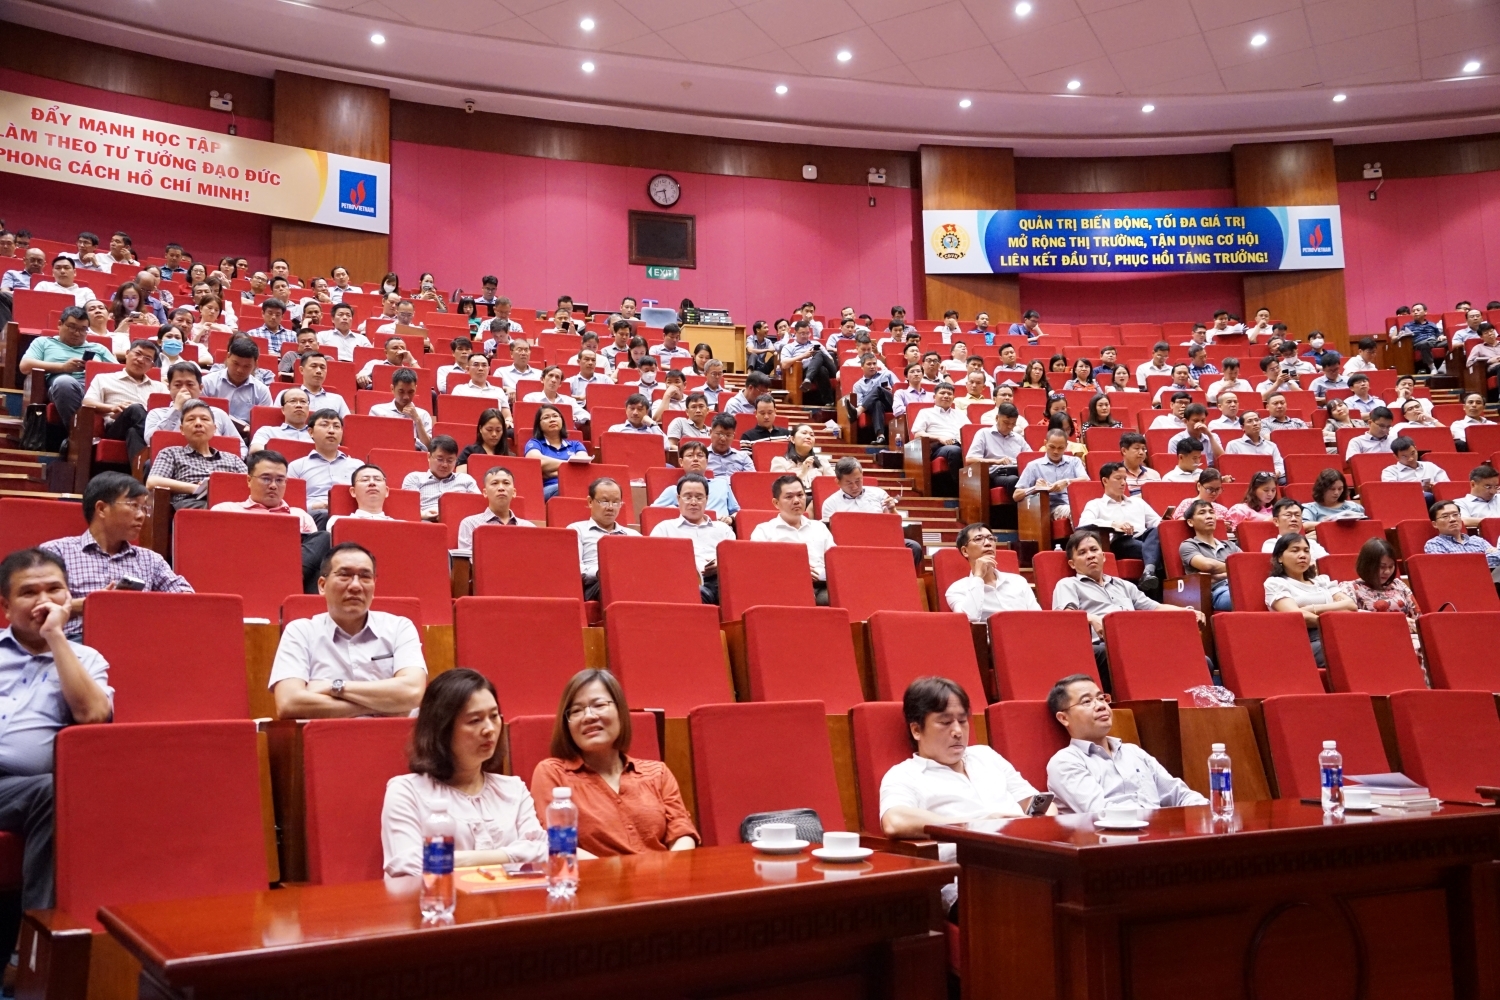 Đảng ủy Tập đoàn Dầu khí Quốc gia Việt Nam khai giảng lớp bồi dưỡng nghiệp vụ công tác Đảng cho Bí thư chi bộ và cấp ủy viên cơ sở năm 2023 khu vực TP Vũng Tàu